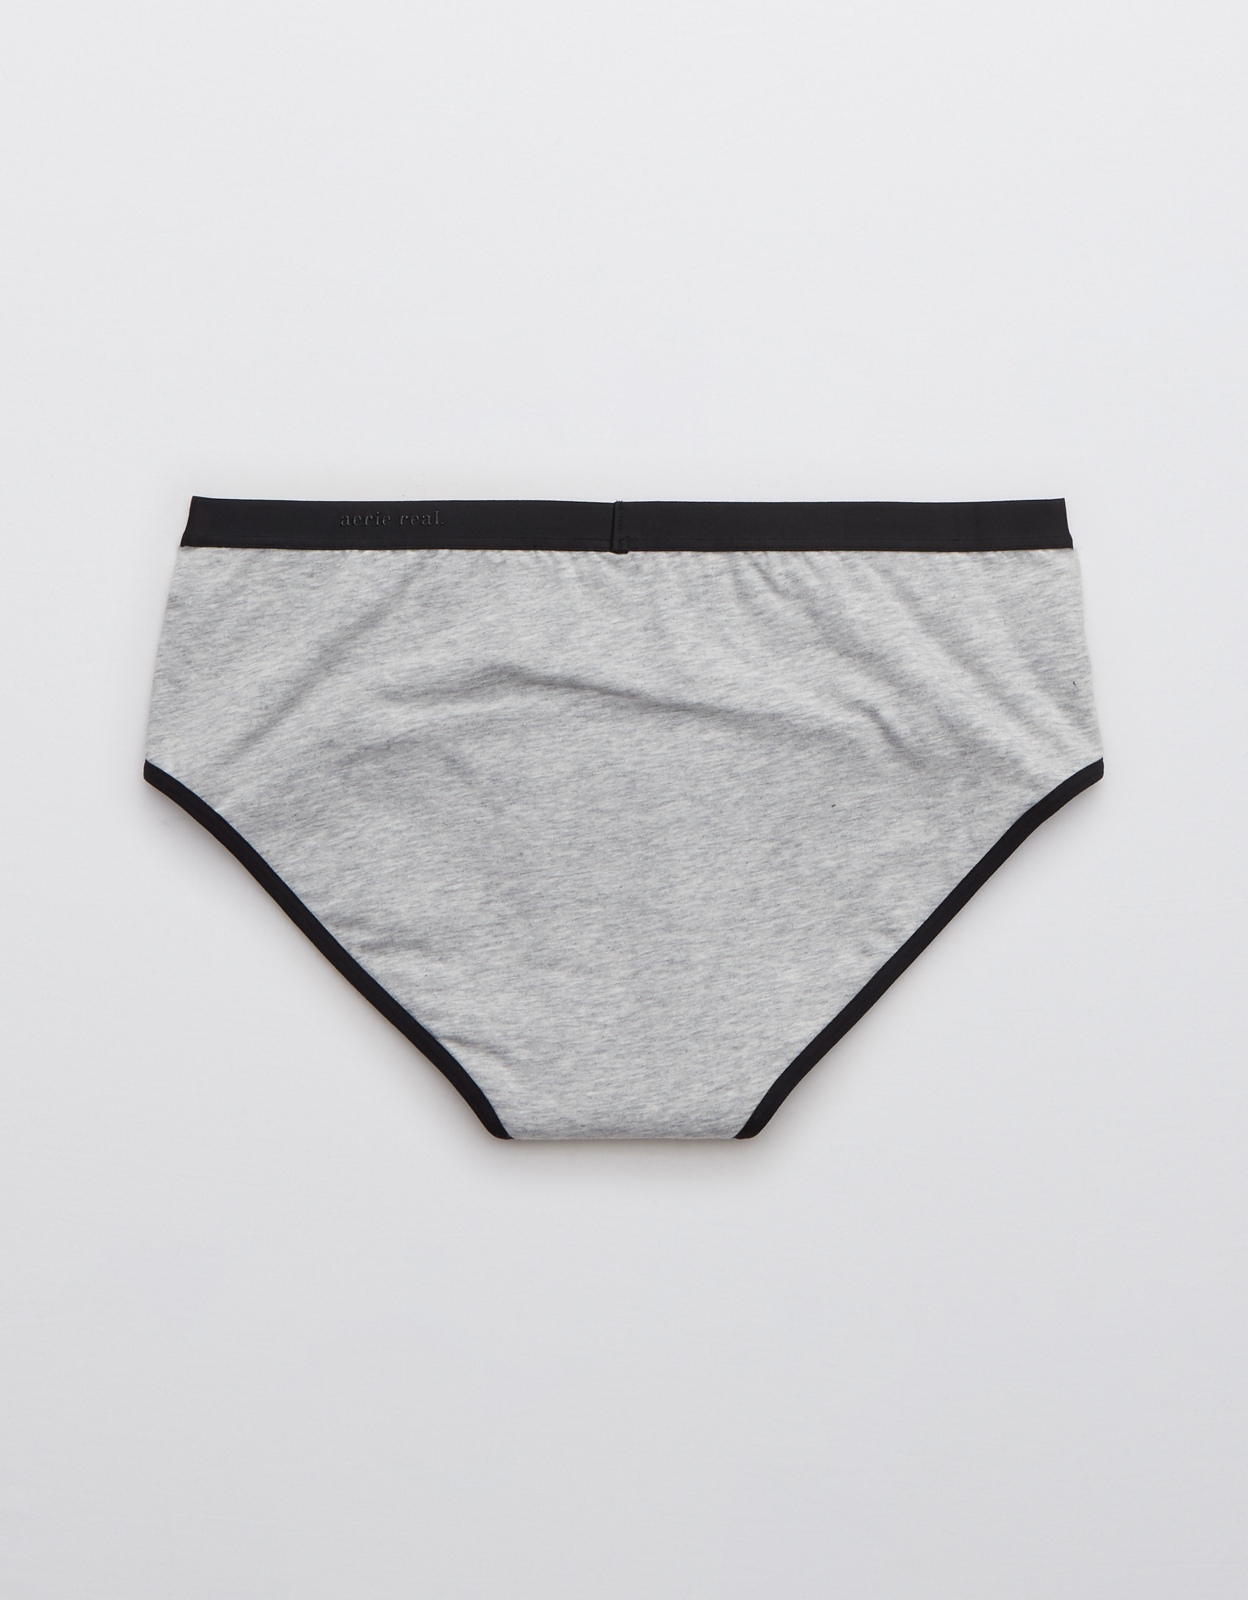 Shop AerieREAL Period™ Underwear online